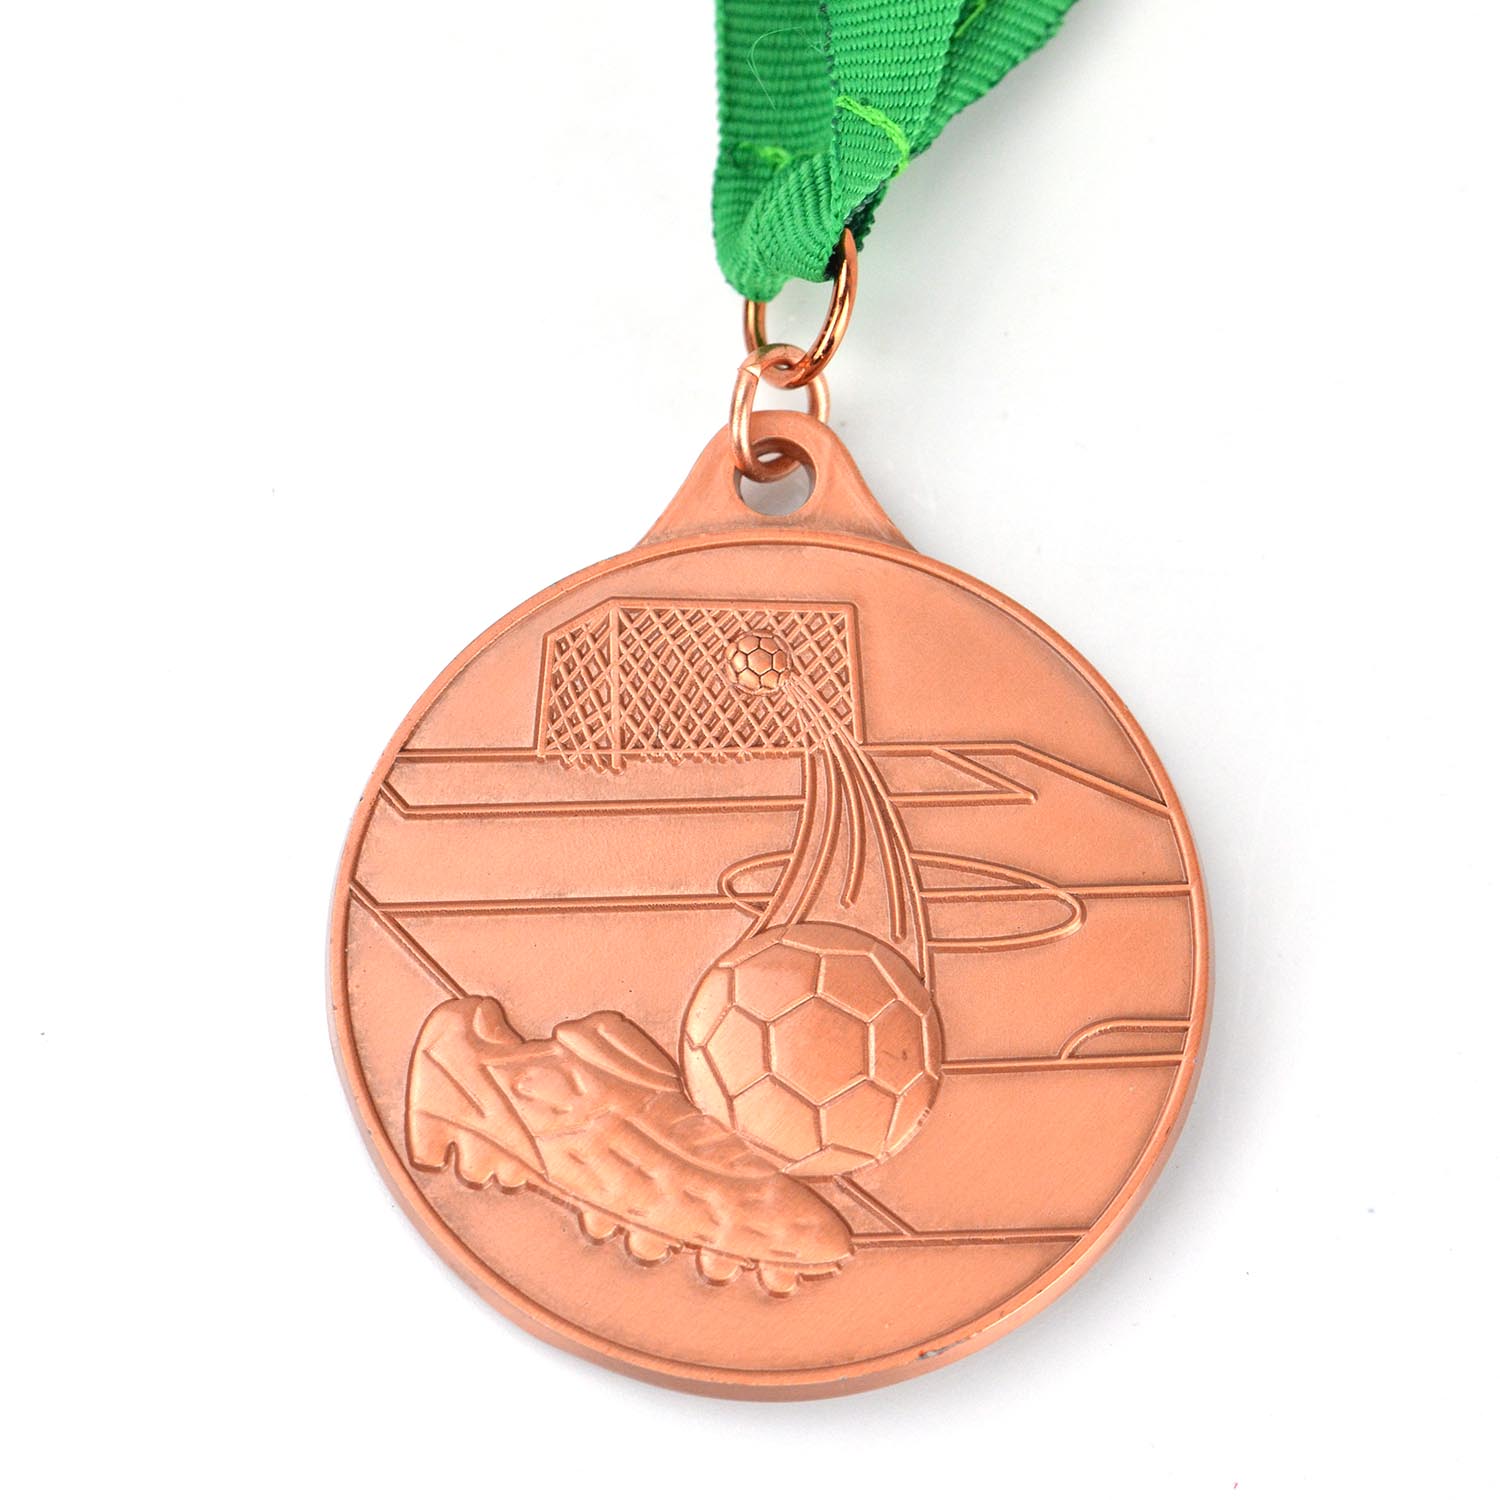 Fabrieksvervaardiging Aandenkings Goud Silwer Koper Metaal Voetbal Volleybal Basketbal Pasgemaakte Sportmedaljes Medaljon (9)